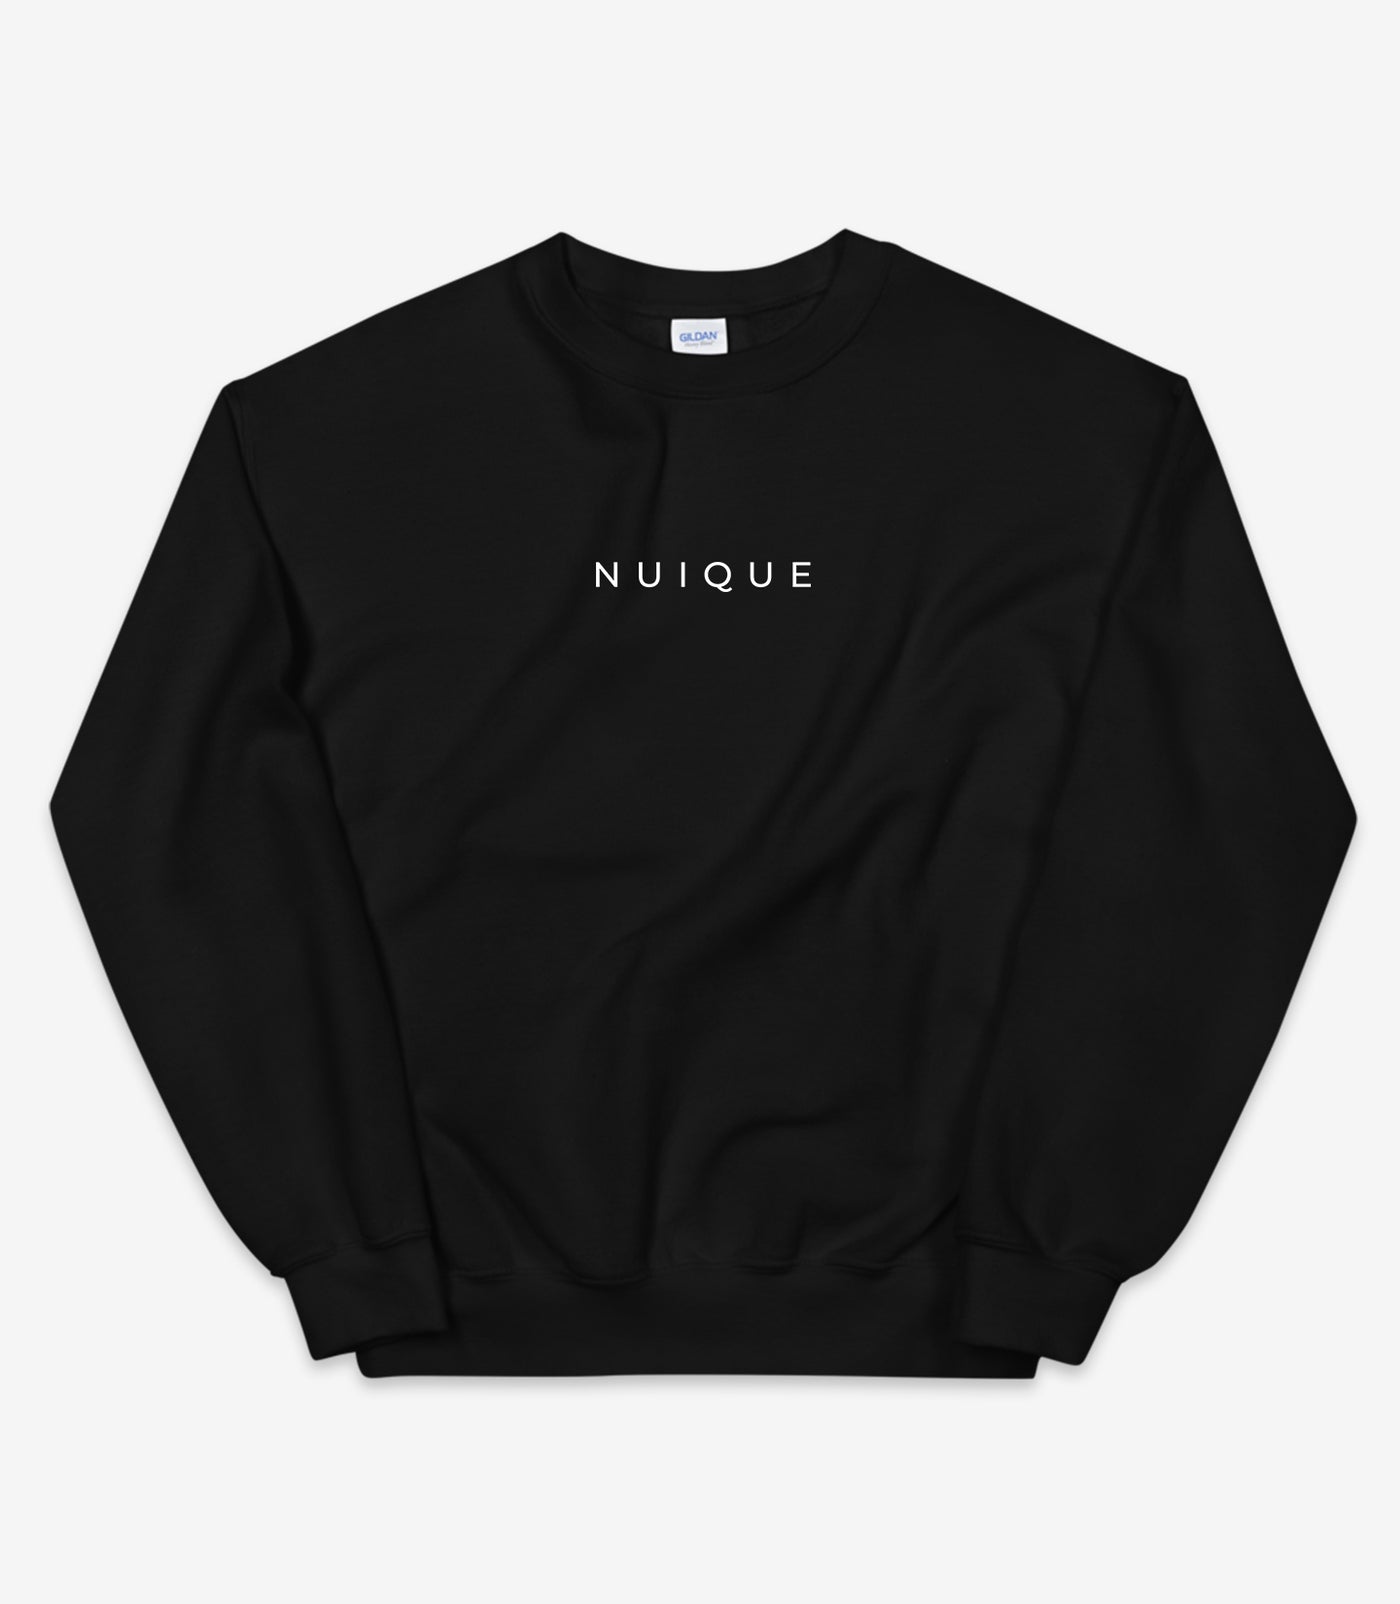 Unique Sweater